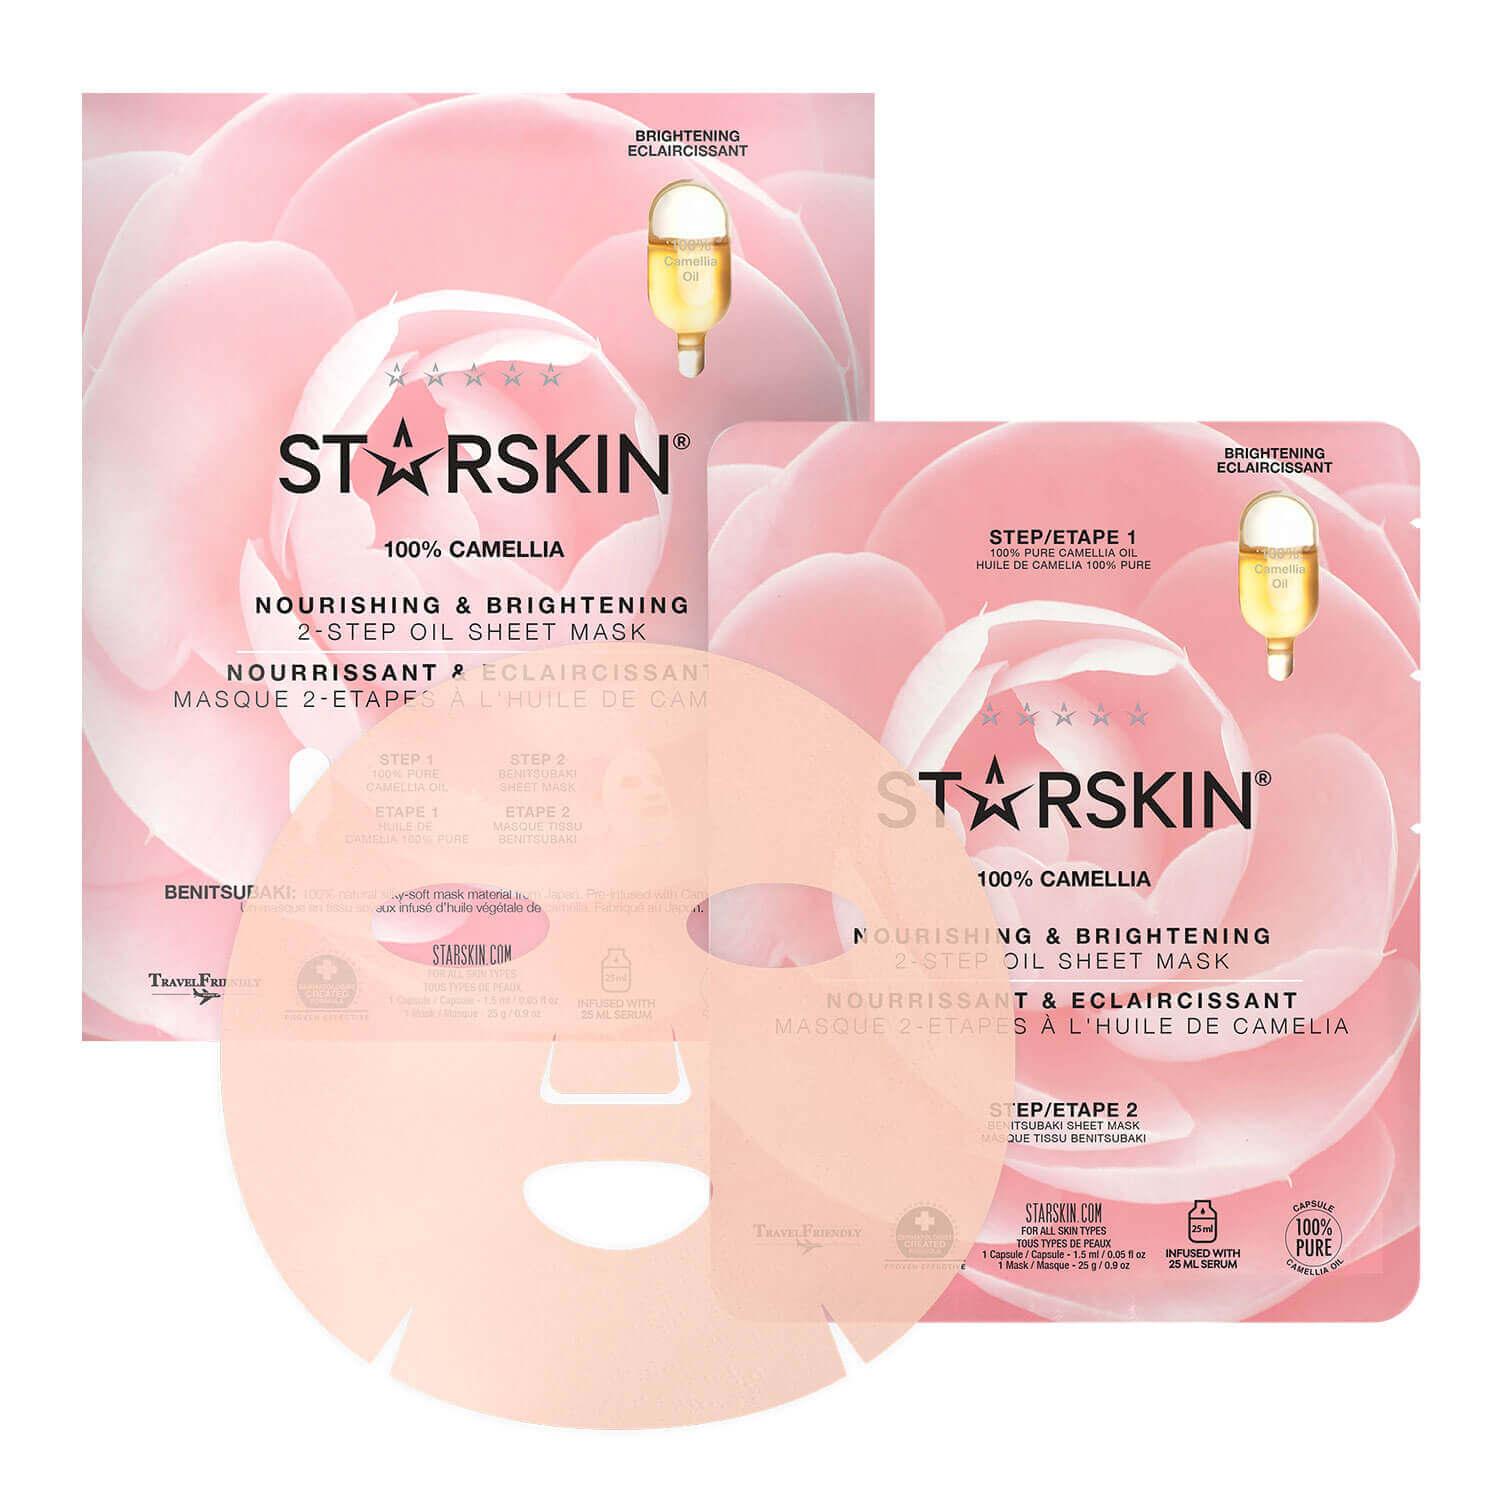 STARSKIN - 100% Camellia Nourishing & Brightening 2-Step Oil Sheet Mask